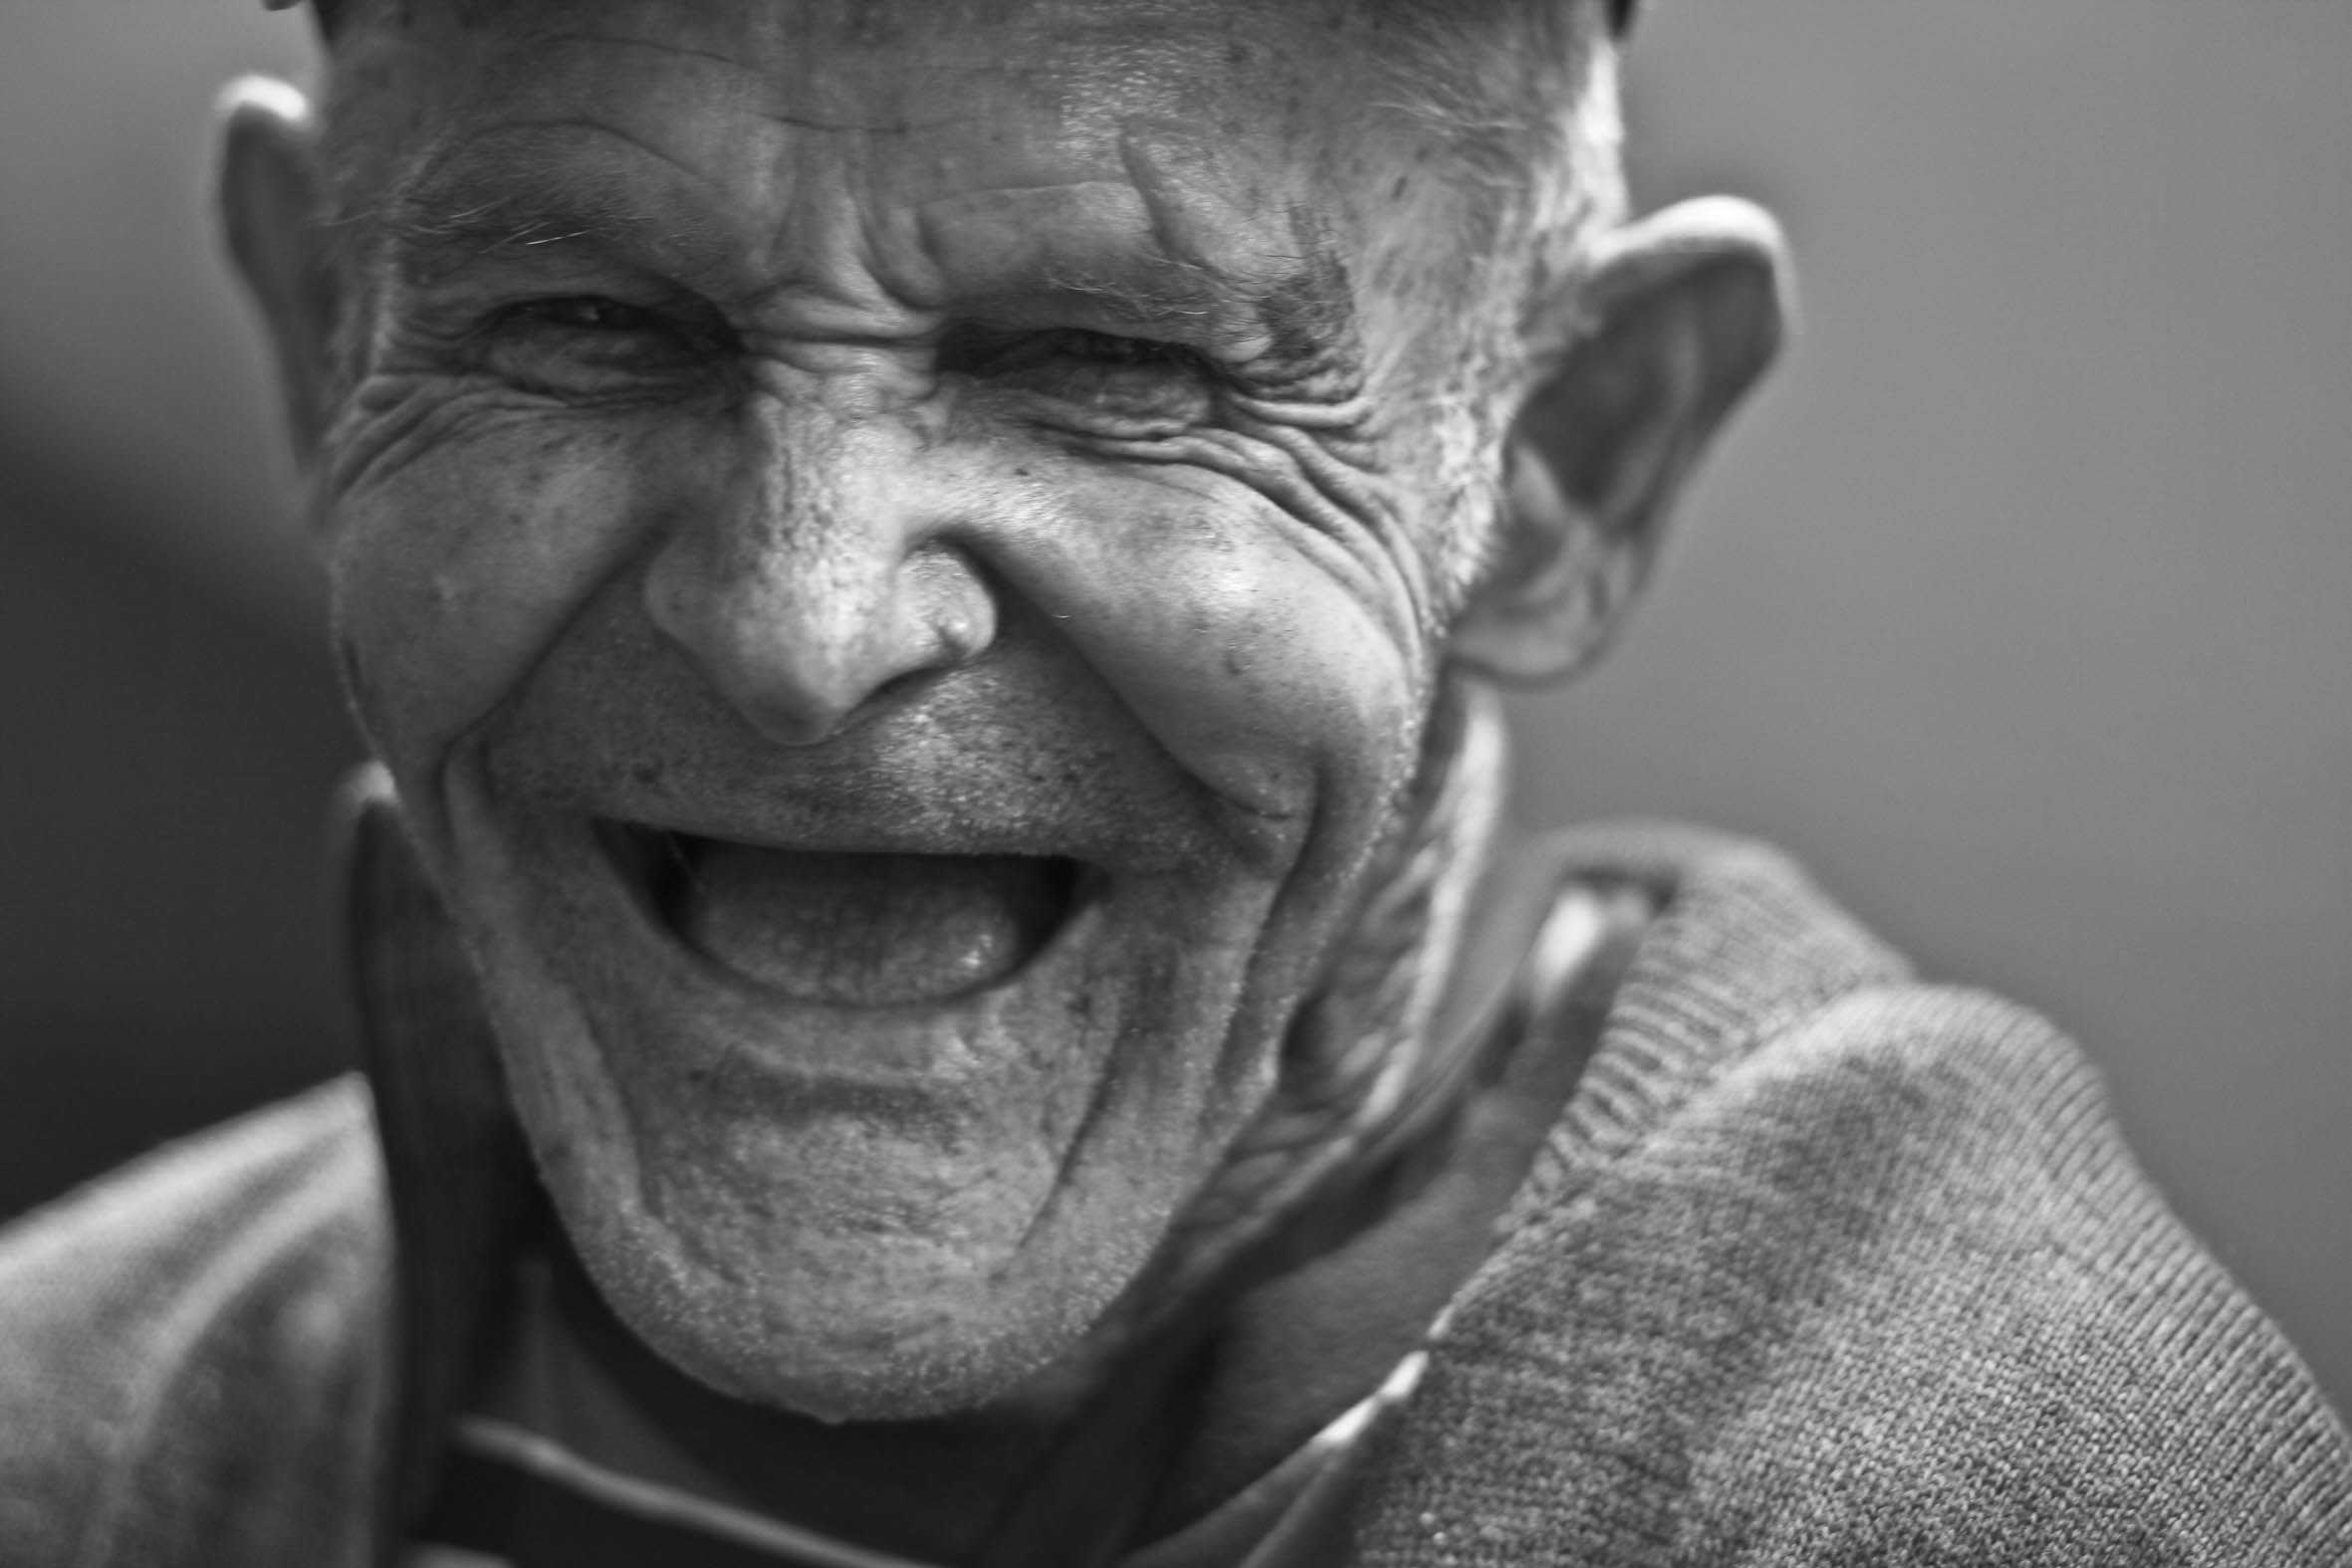 Le bien-être par le rire, réapprendre à sourire à la vie.